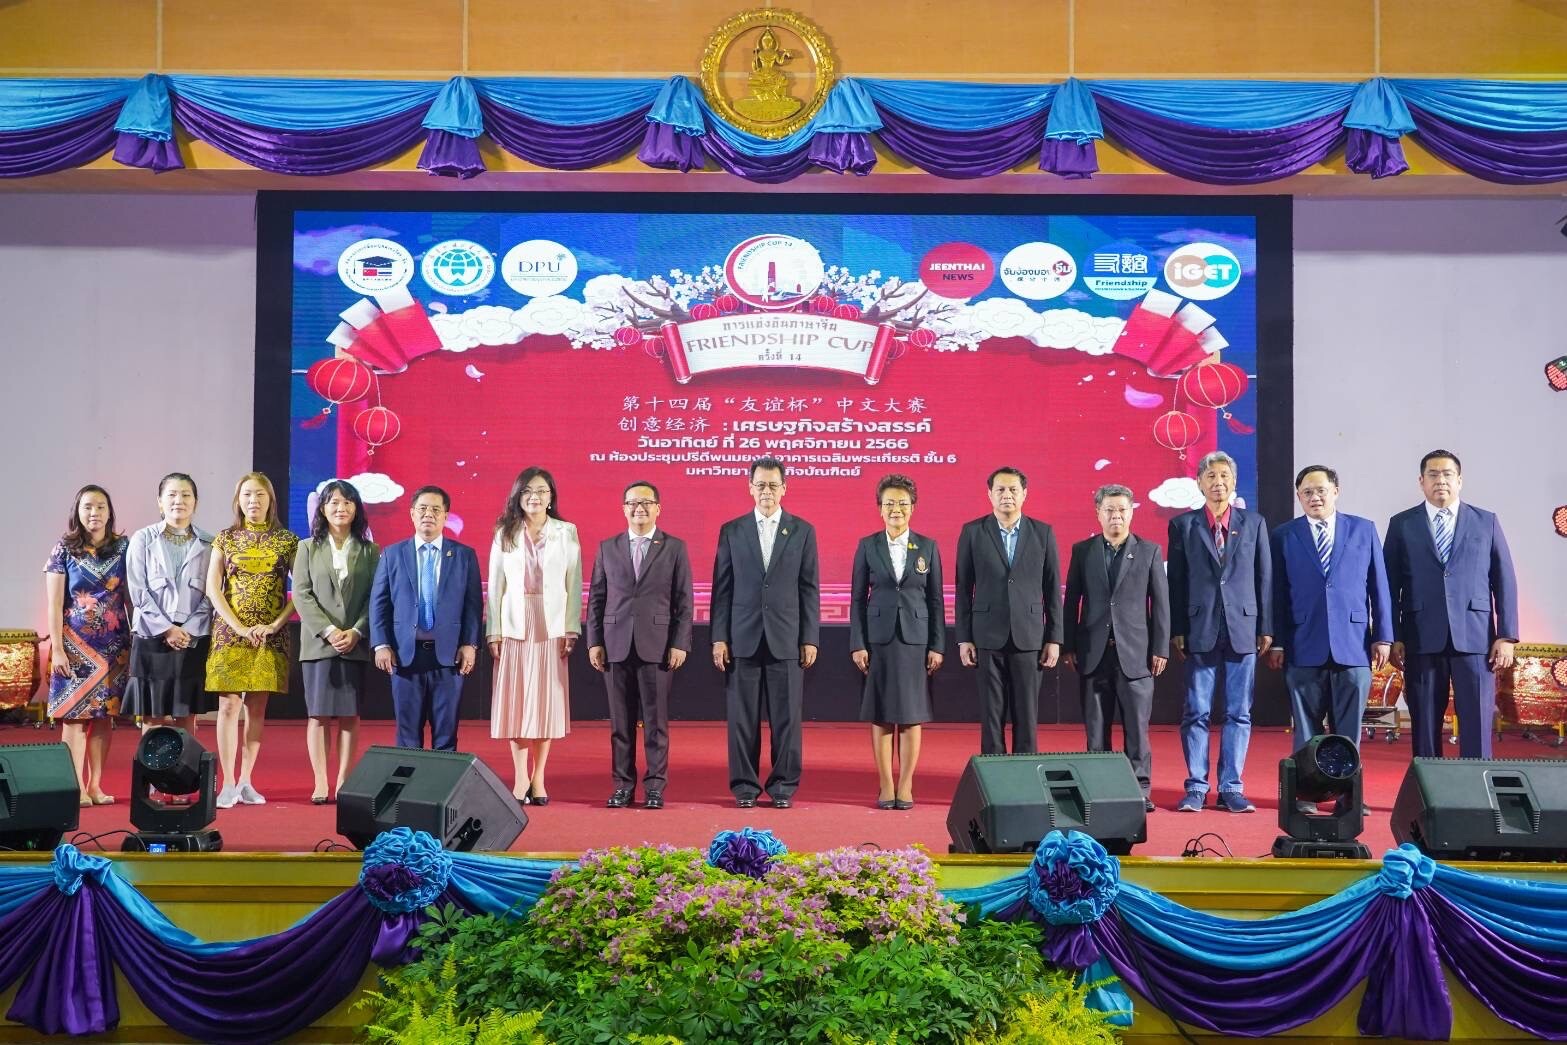 วิทยาลัยนานาชาติ DPU  จับมือ 5 เครือข่ายด้านการศึกษาจีน จัดการแข่งขัน Friendship Cup ครั้งที่14 หนุนการพัฒนาศักยภาพ นร.ไทยสู่ยุคเศรษฐกิจสร้างสรรค์ พร้อมมอบทุนการศึกษาและเงินรางวัลกว่า 50 รางวัล